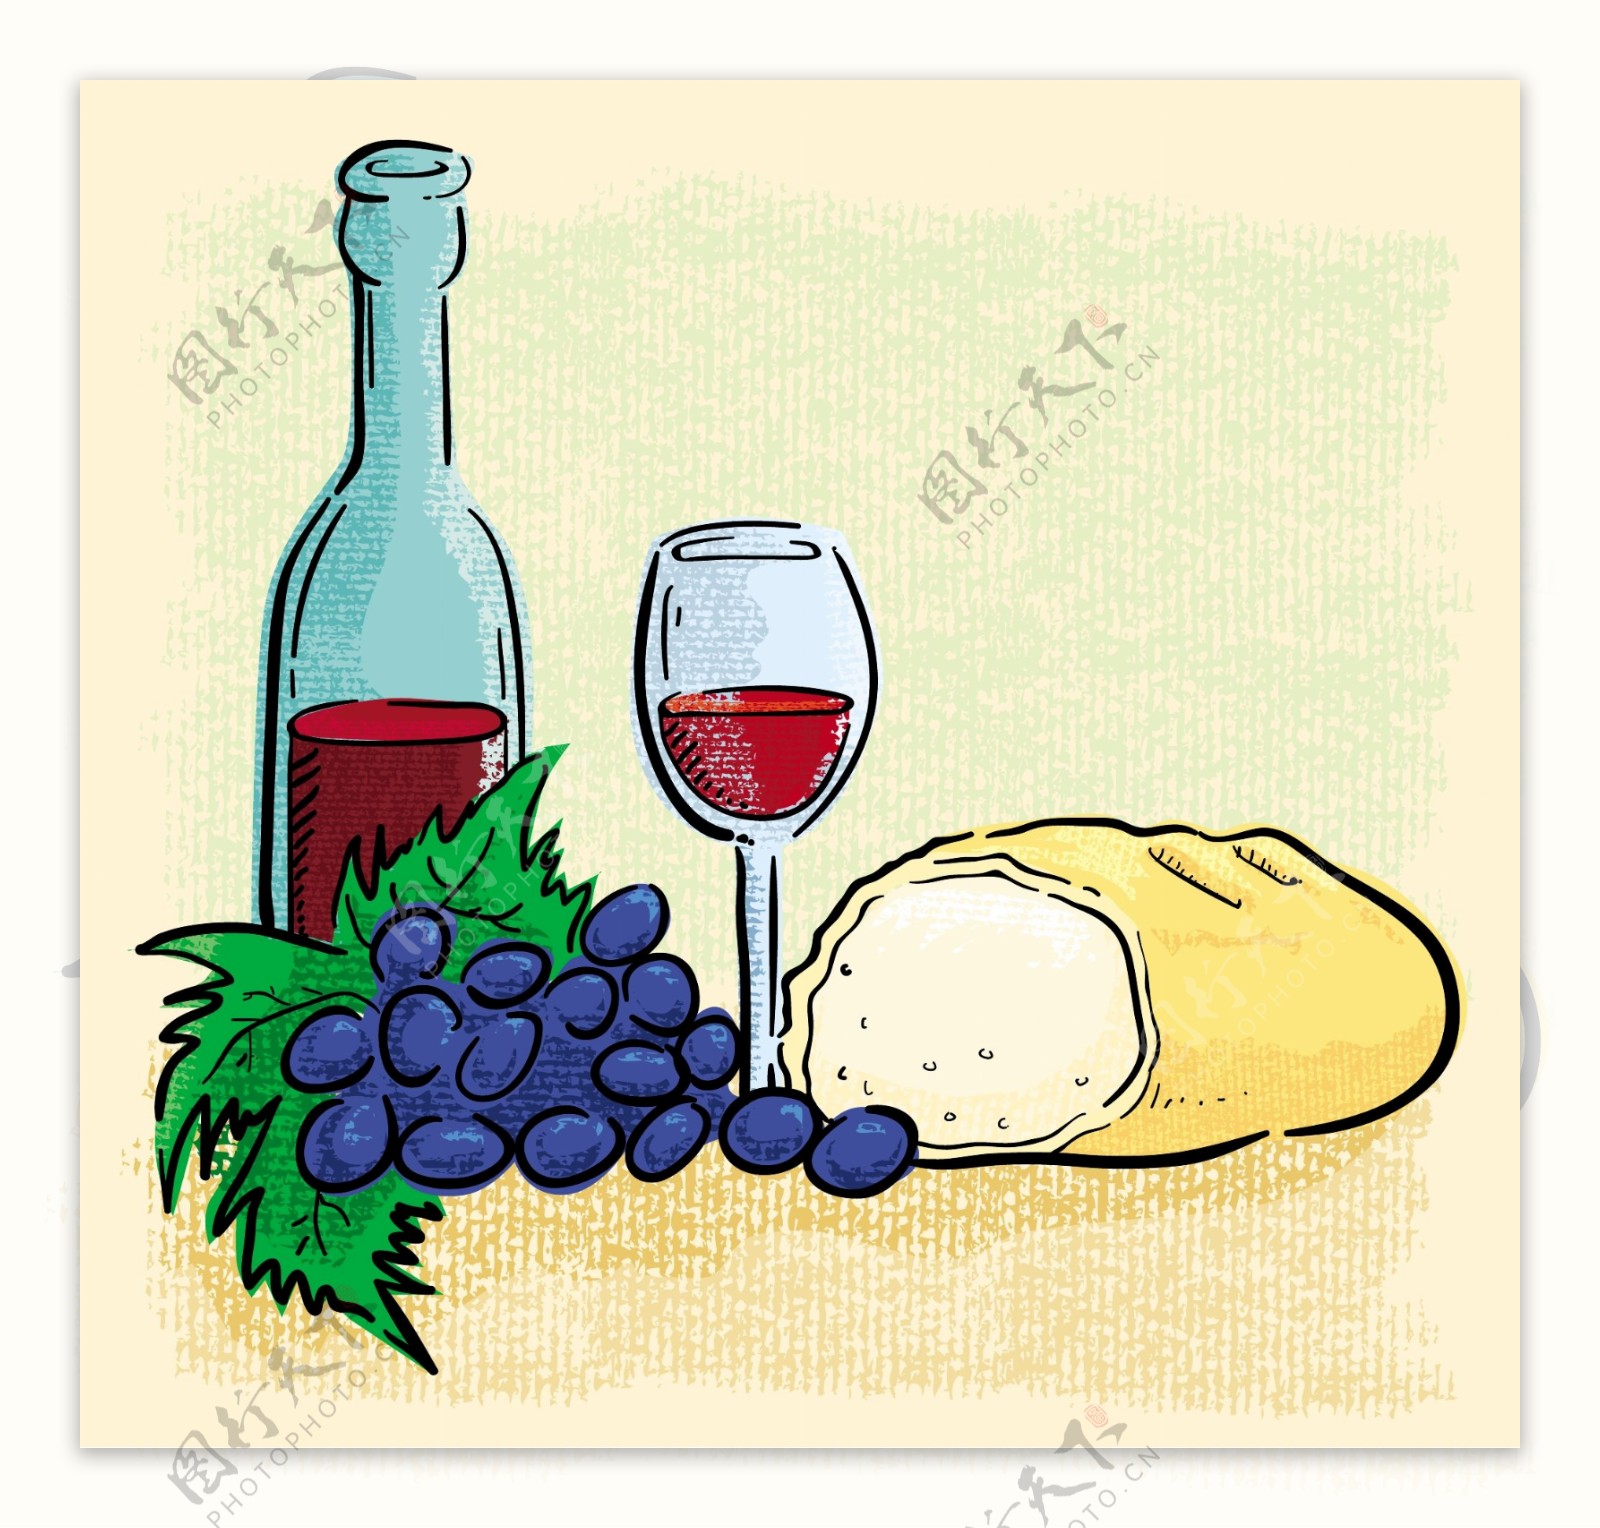 水果和葡萄酒矢量